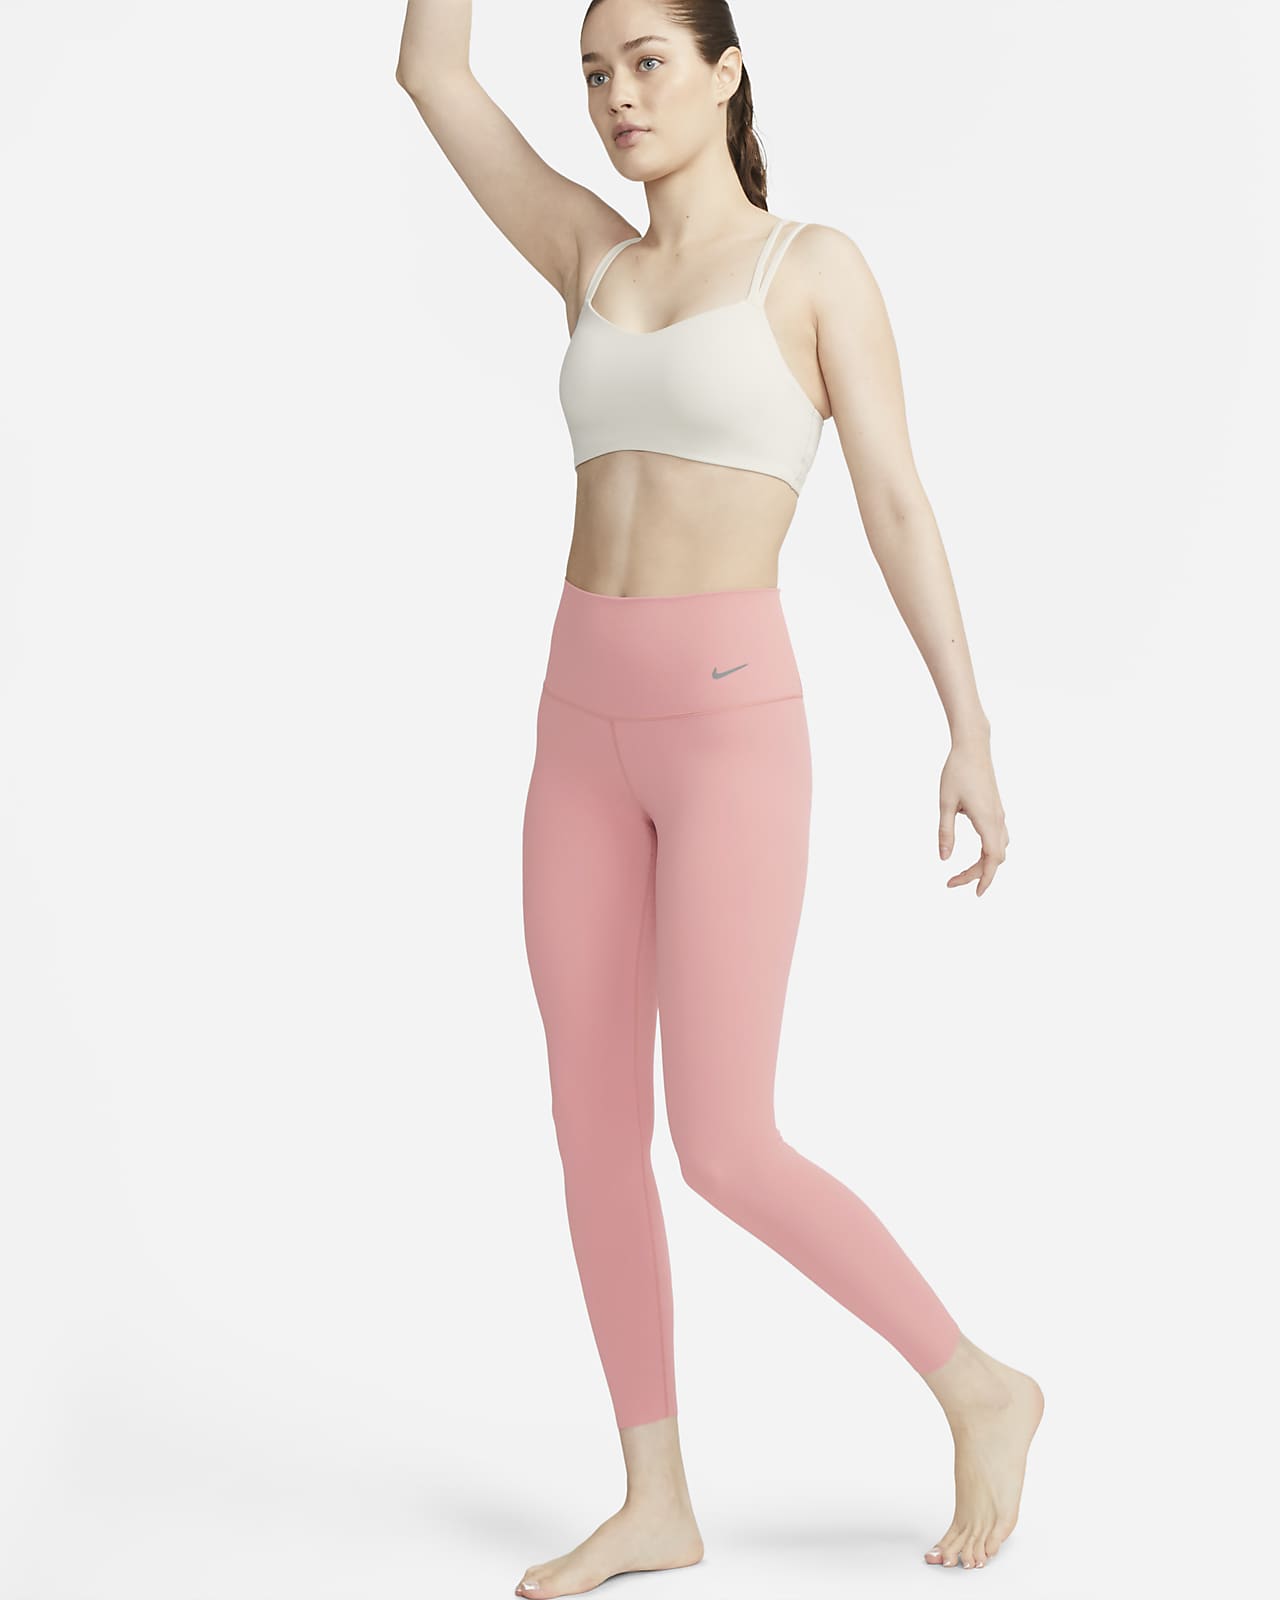 Nike lanza unas mallas menstruales y más prendas innovadoras para mujer